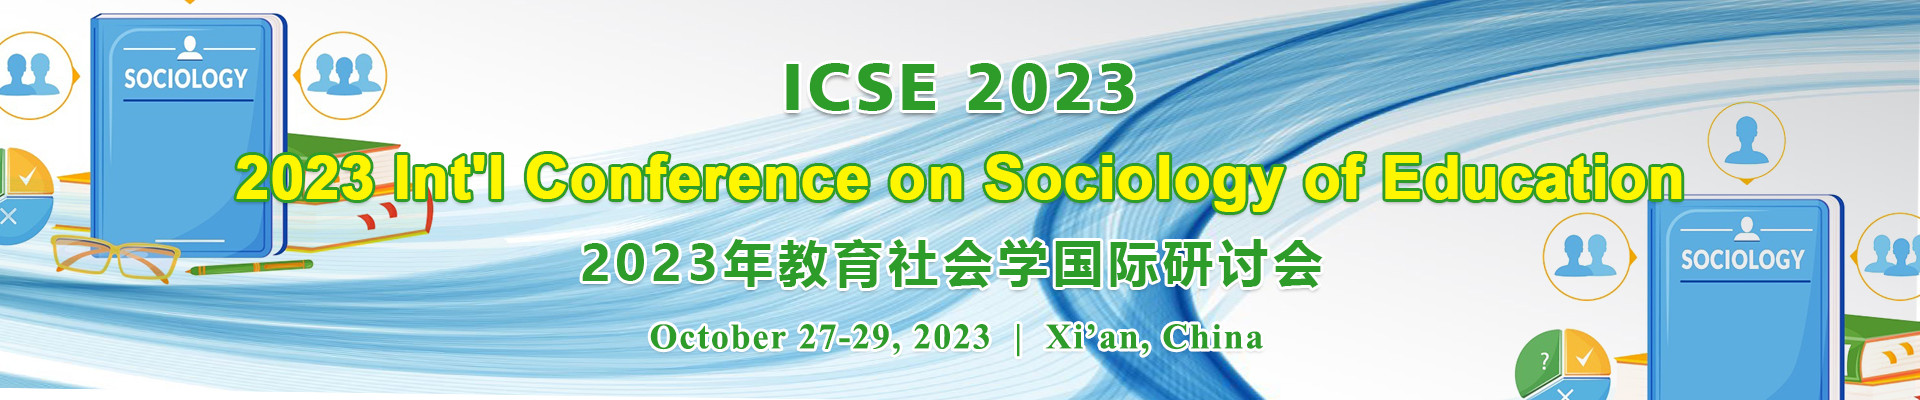 2023年教育社会学国际研讨会 (ICSE 2023) 